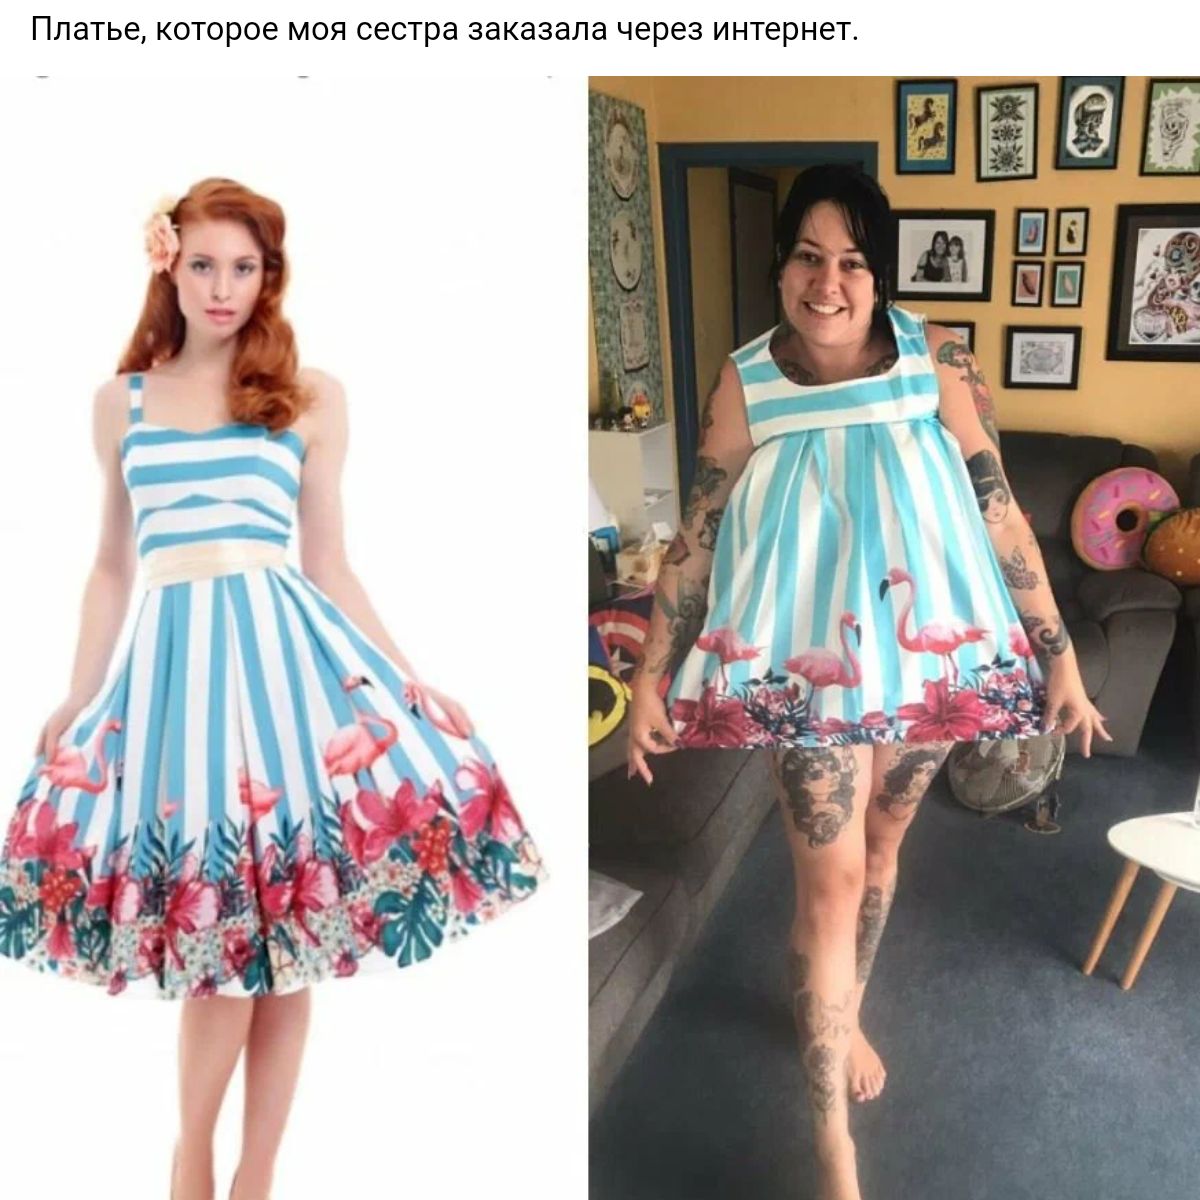 Платье которое моя сестра заказала через интернет